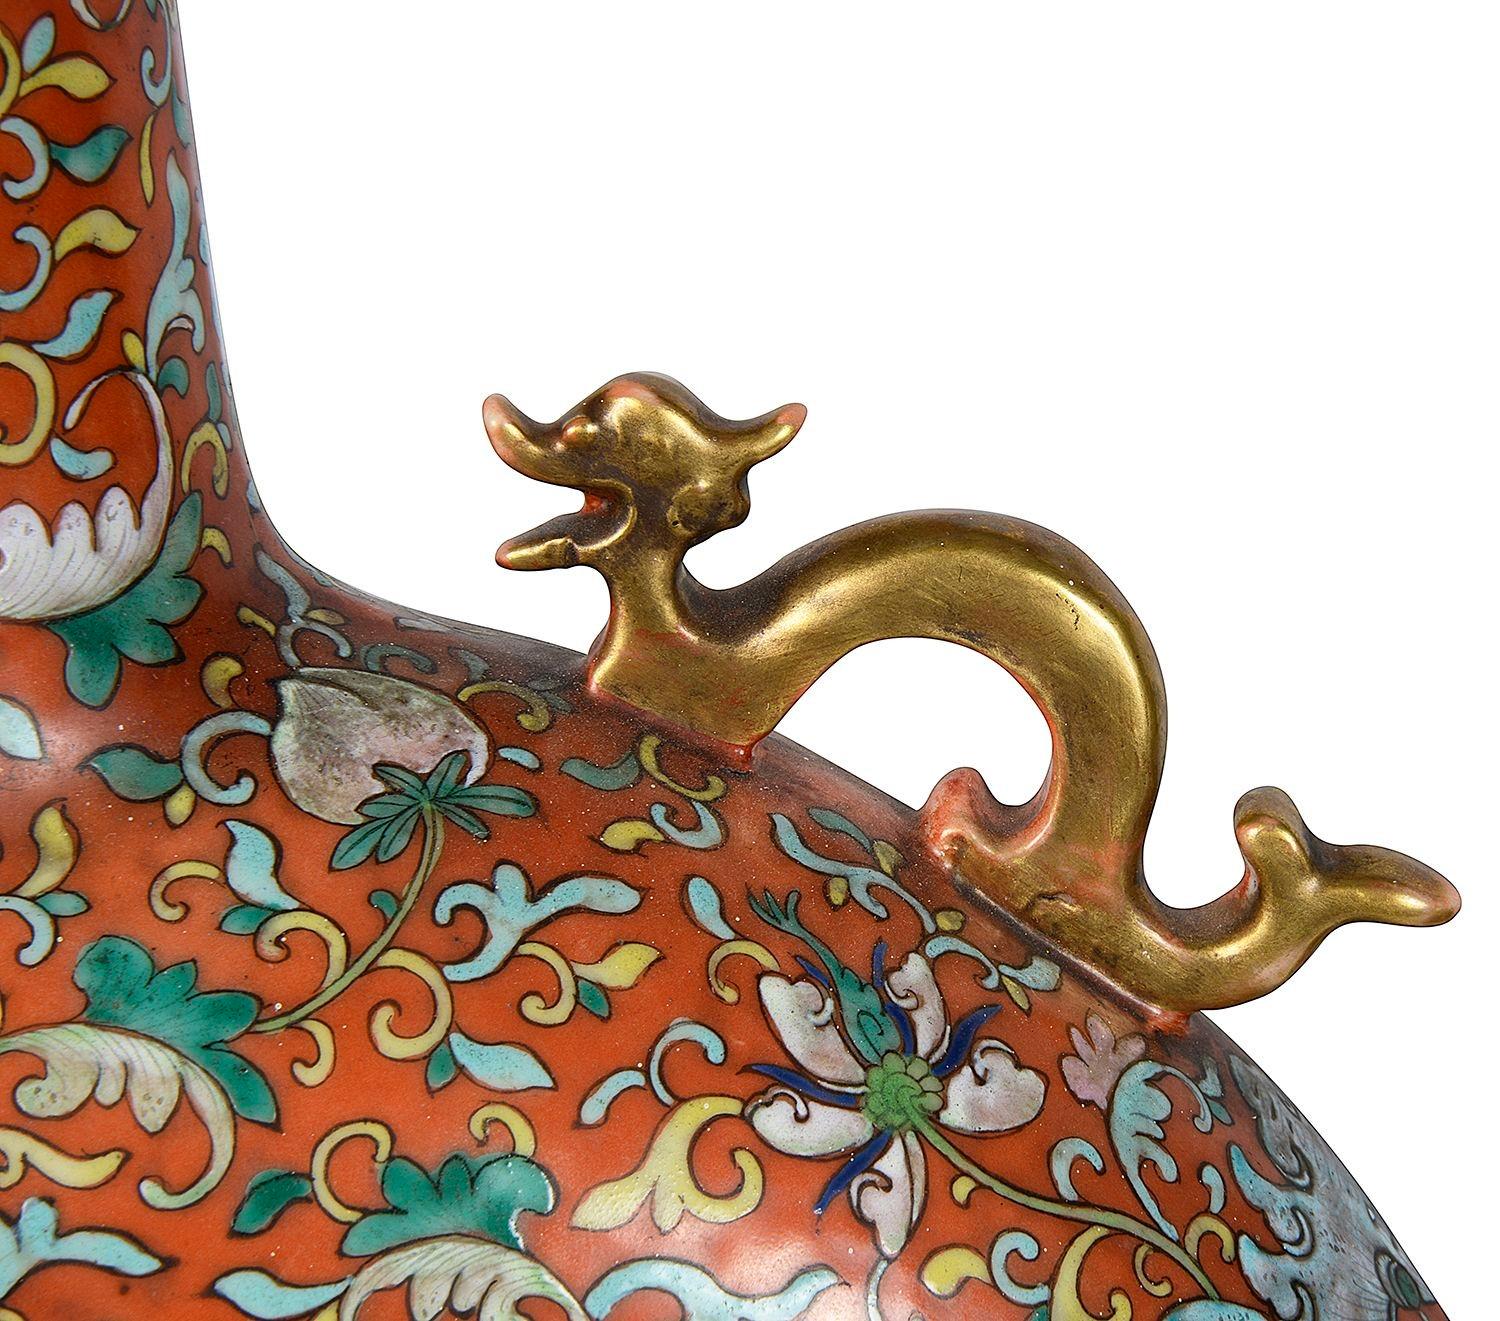 Une très impressionnante paire de flacons de lune de la famille rose chinoise du XIXe siècle, chacun avec des bordures à motif classique, des poignées de serpent dorées de chaque côté, des panneaux peints à la main représentant des oiseaux